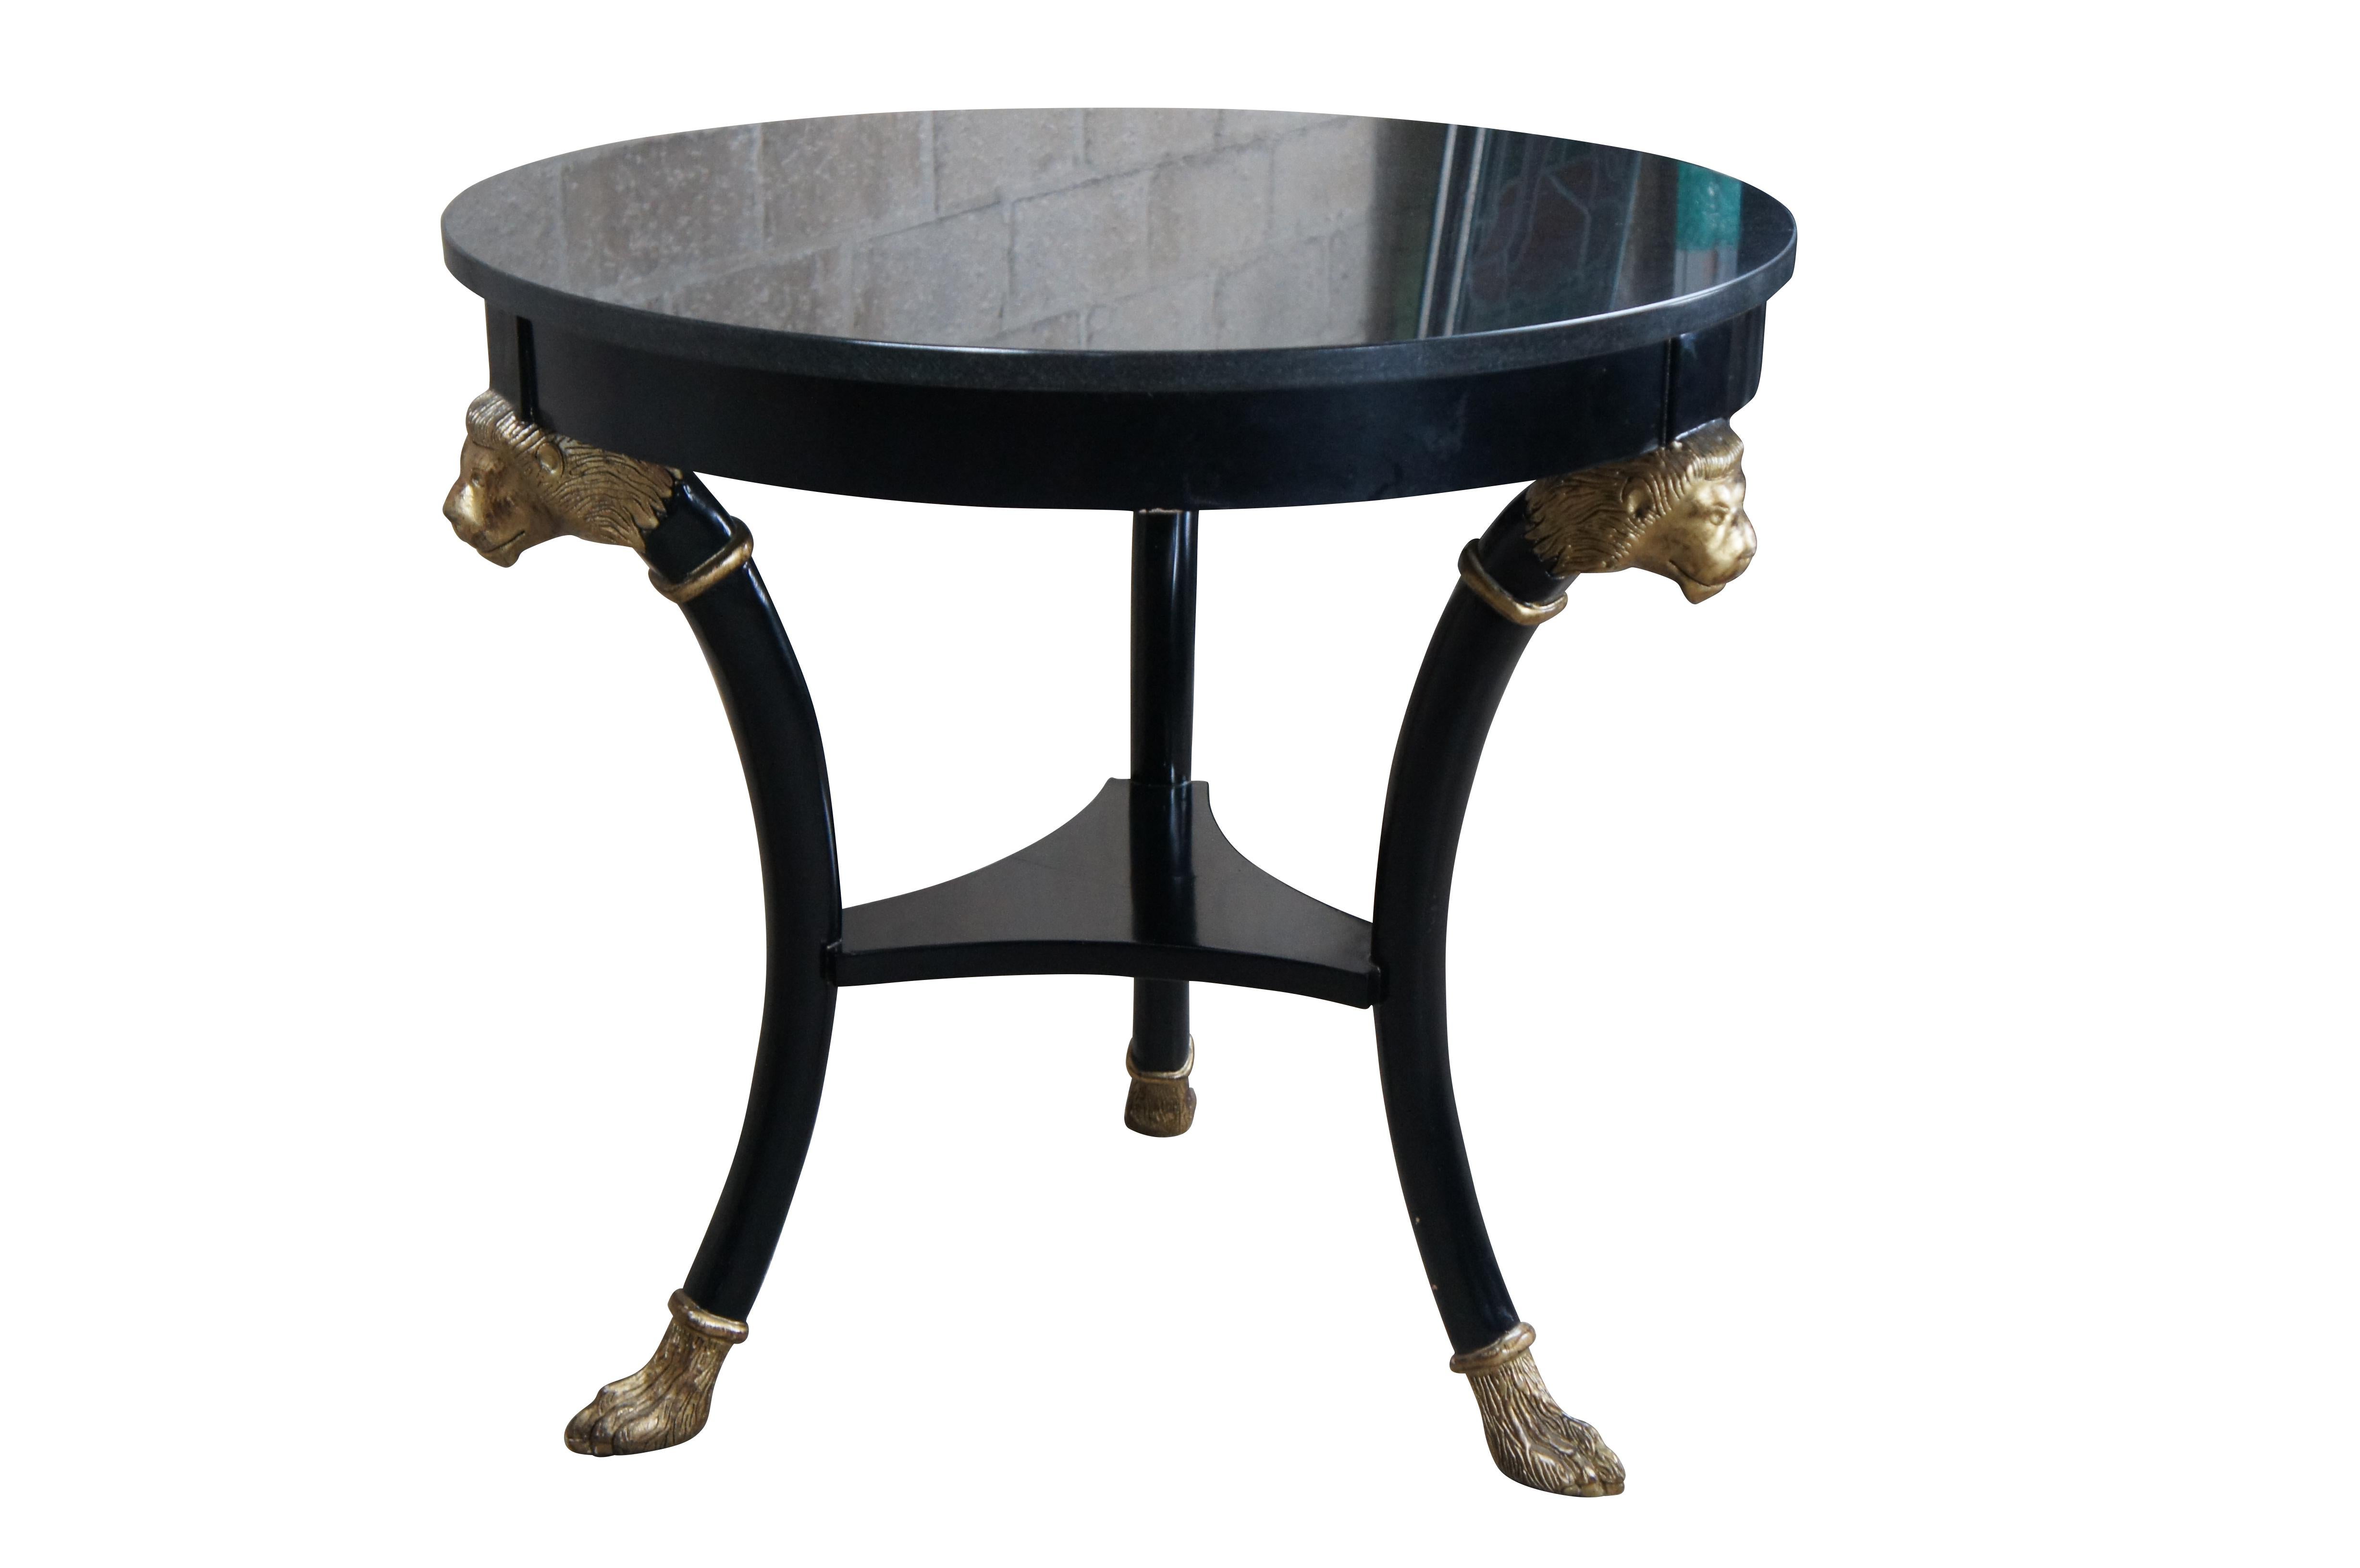 Ende des 20. Jahrhunderts Baker Furniture Empire / Regency / Neoklassizismus inspiriert Gueridon Beistelltisch. Mit ebonisiertem Hartholzrahmen und dunkler Granitplatte. Die runde Form wird von drei konturierten Beinen mit vergoldeten Löwenköpfen